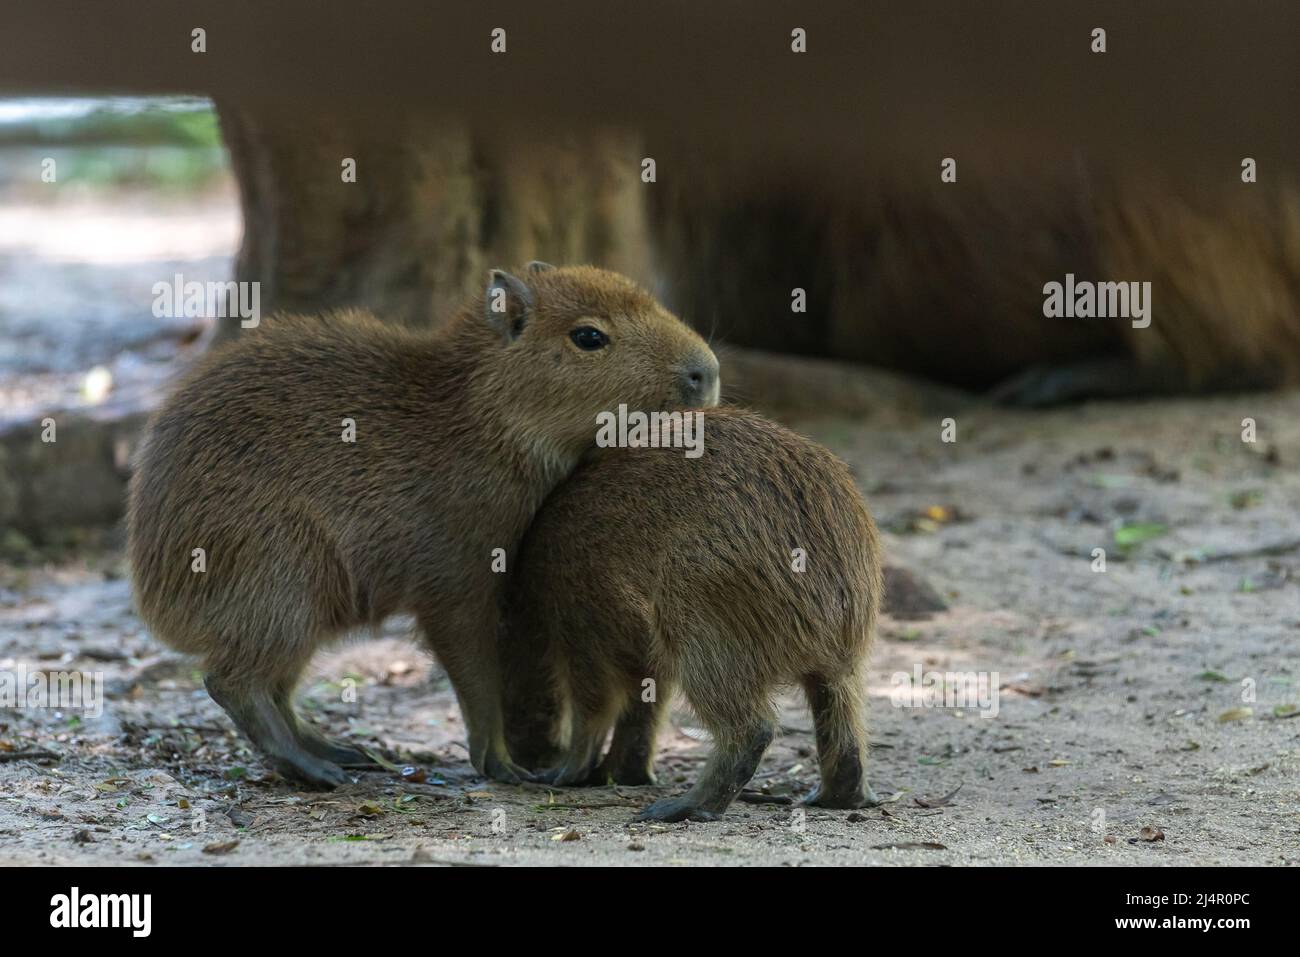 Zwei Nachkommen von Capybara, Capybara oder 'Capybara', einem amerikanischen Nagetier in einem natürlichen Zustand Stockfoto